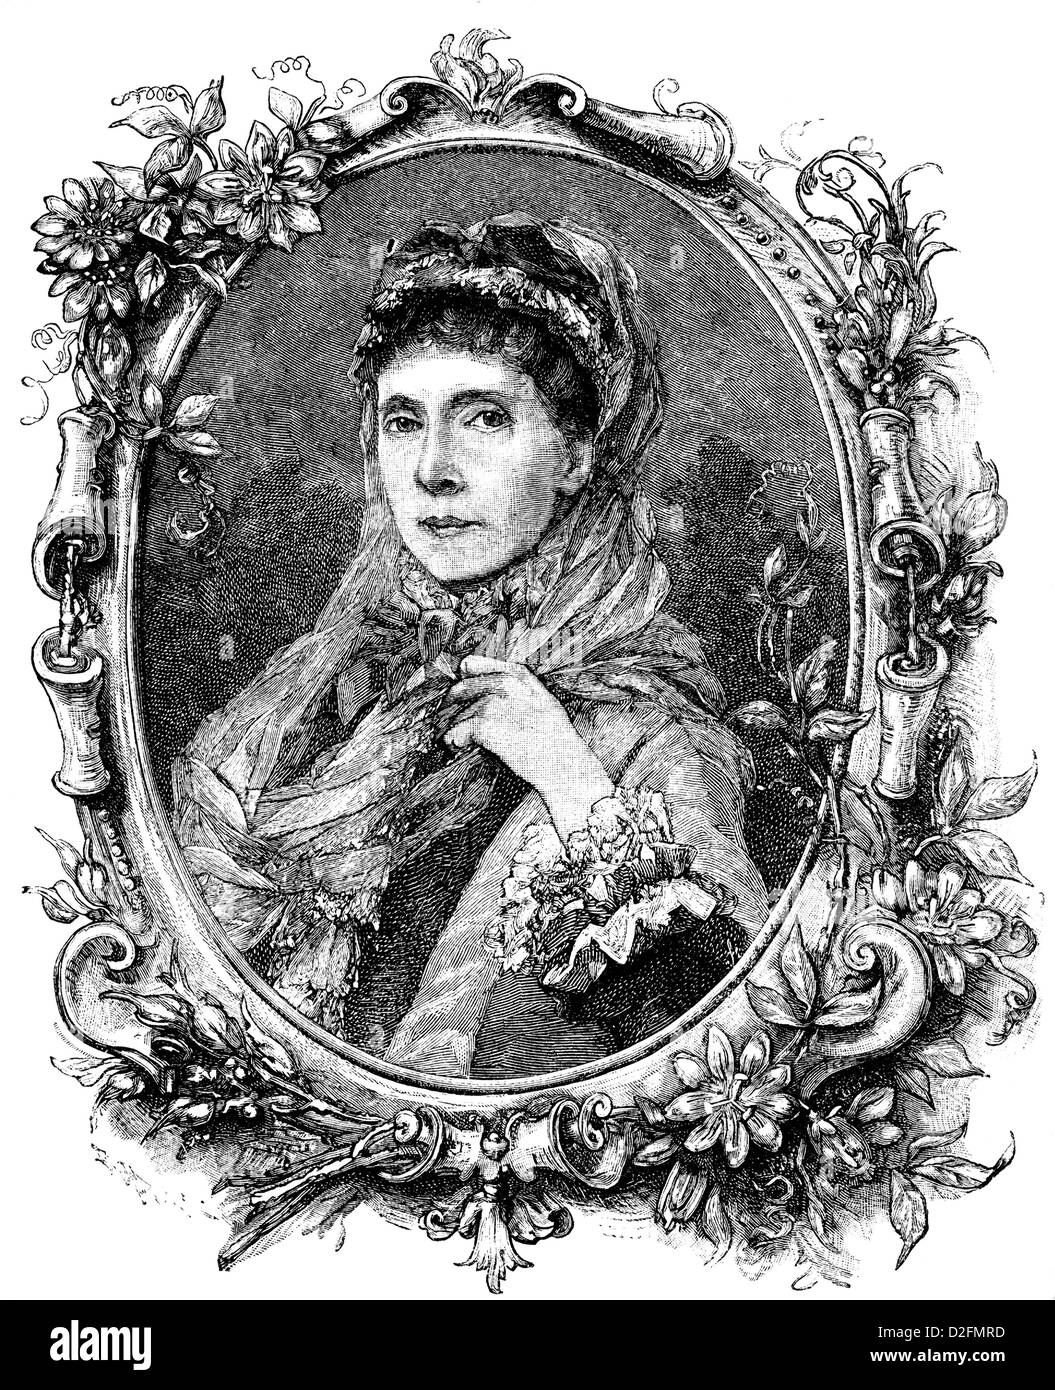 Augusta Marie Luise Katharina von Sachsen-Weimar-Eisenach, 1811 - 1890, l'épouse de l'empereur Guillaume I de Prusse Reine Impératrice allemande Banque D'Images